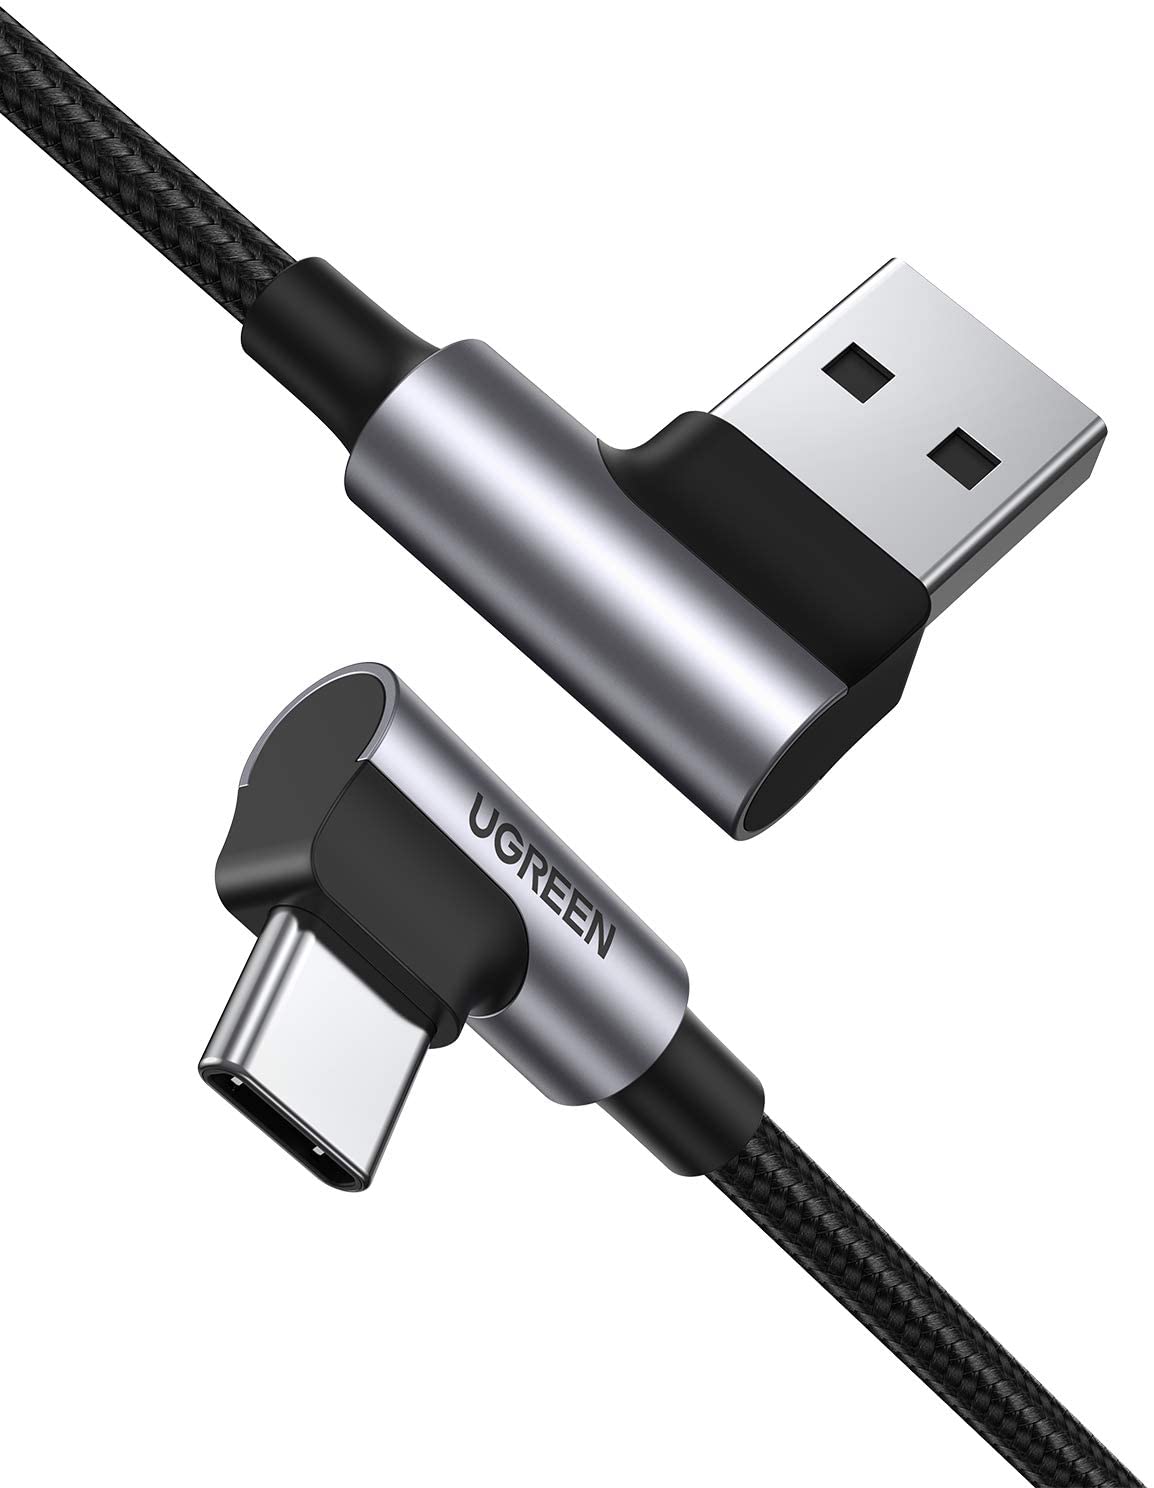  Кабель UGREEN US176 USB 2.0 - USB Type-C, угловой, оплетка, цвет -  серый/черный, длина -  2м